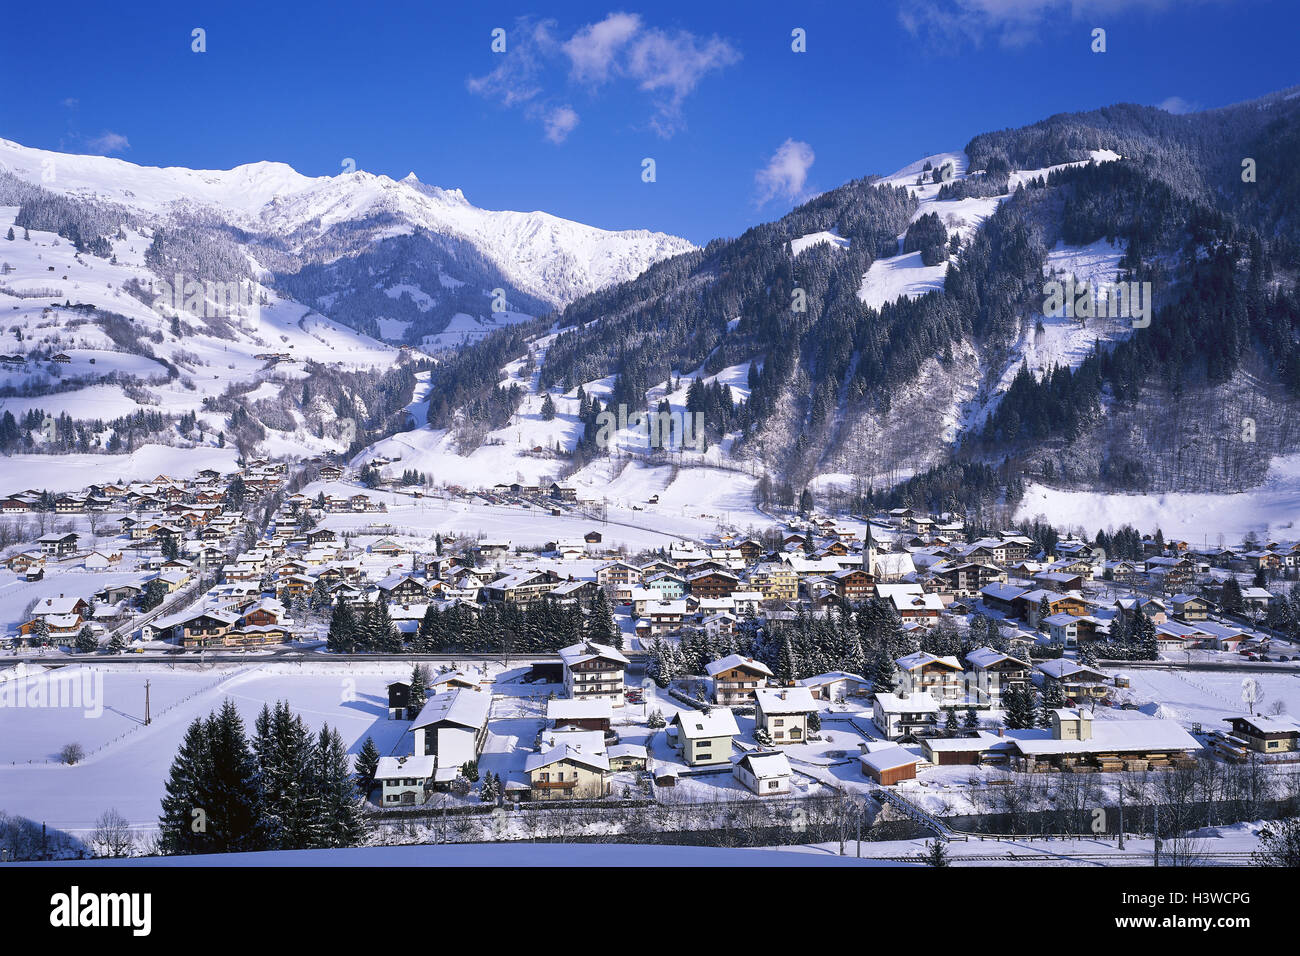 Austria, Salzburg, Dorfgastein, winter, winter scenery, mountain landscape, mountains, snow, Gasteinertal, local view, Stock Photo